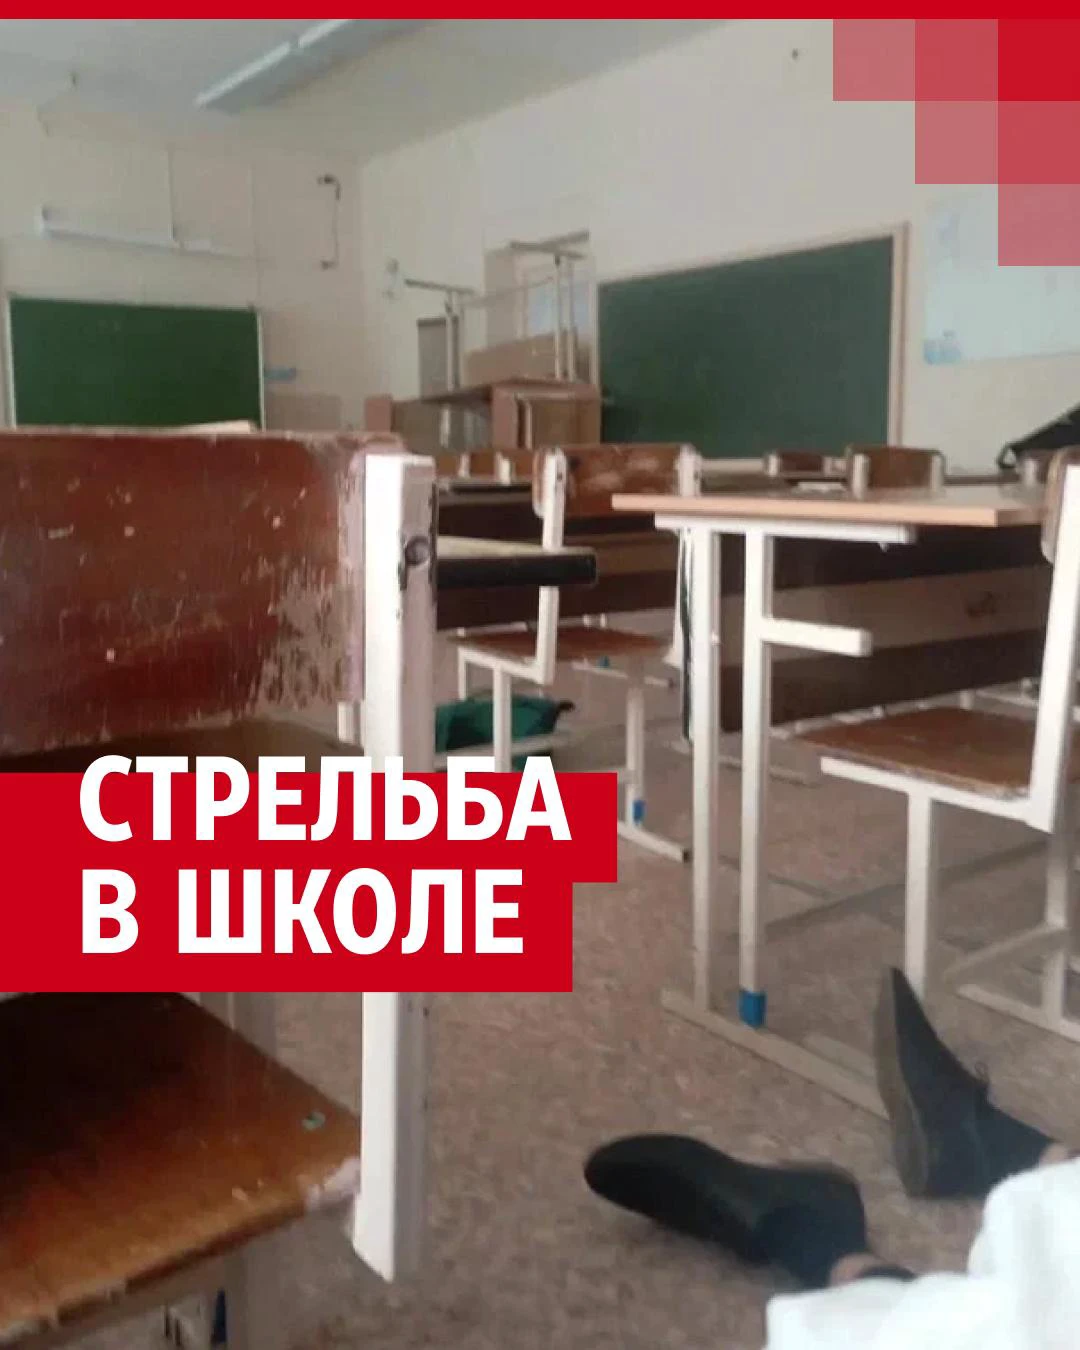 В ижевской школе мужчина устроил стрельбу и убил 15 человек 26 сентября  2022 г. - 26 сентября 2022 - 59.ru